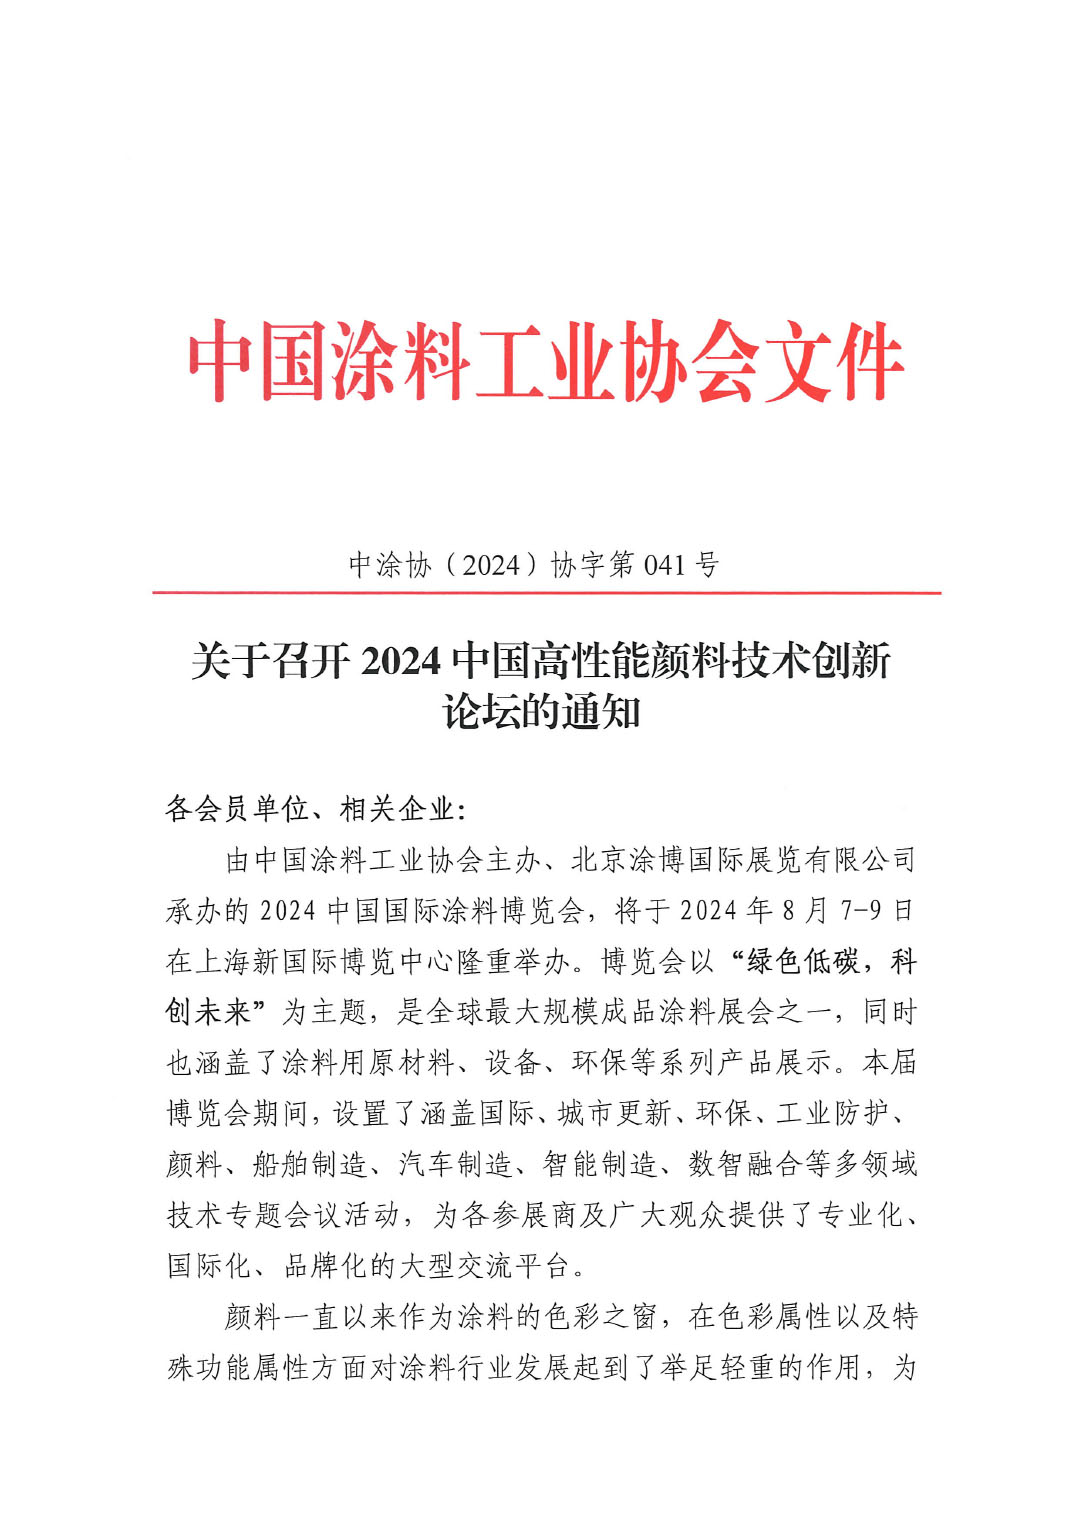 关于召开2024中国高性能颜料技术创新论坛的通知-1